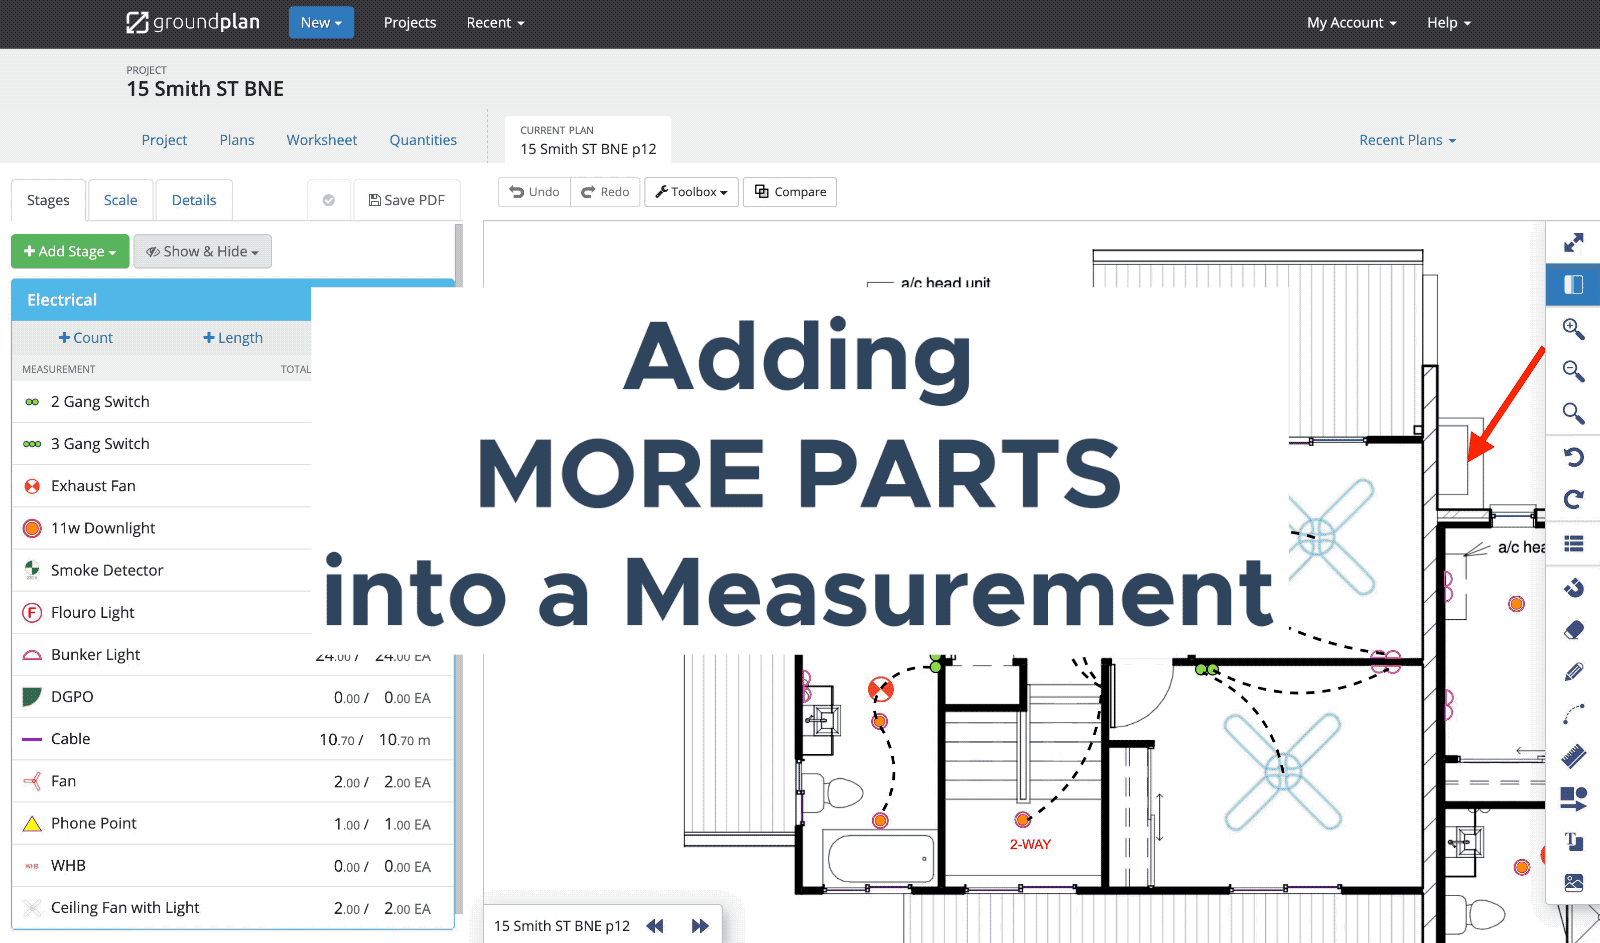 Measurement Parts and Labour - Adding more Parts v3